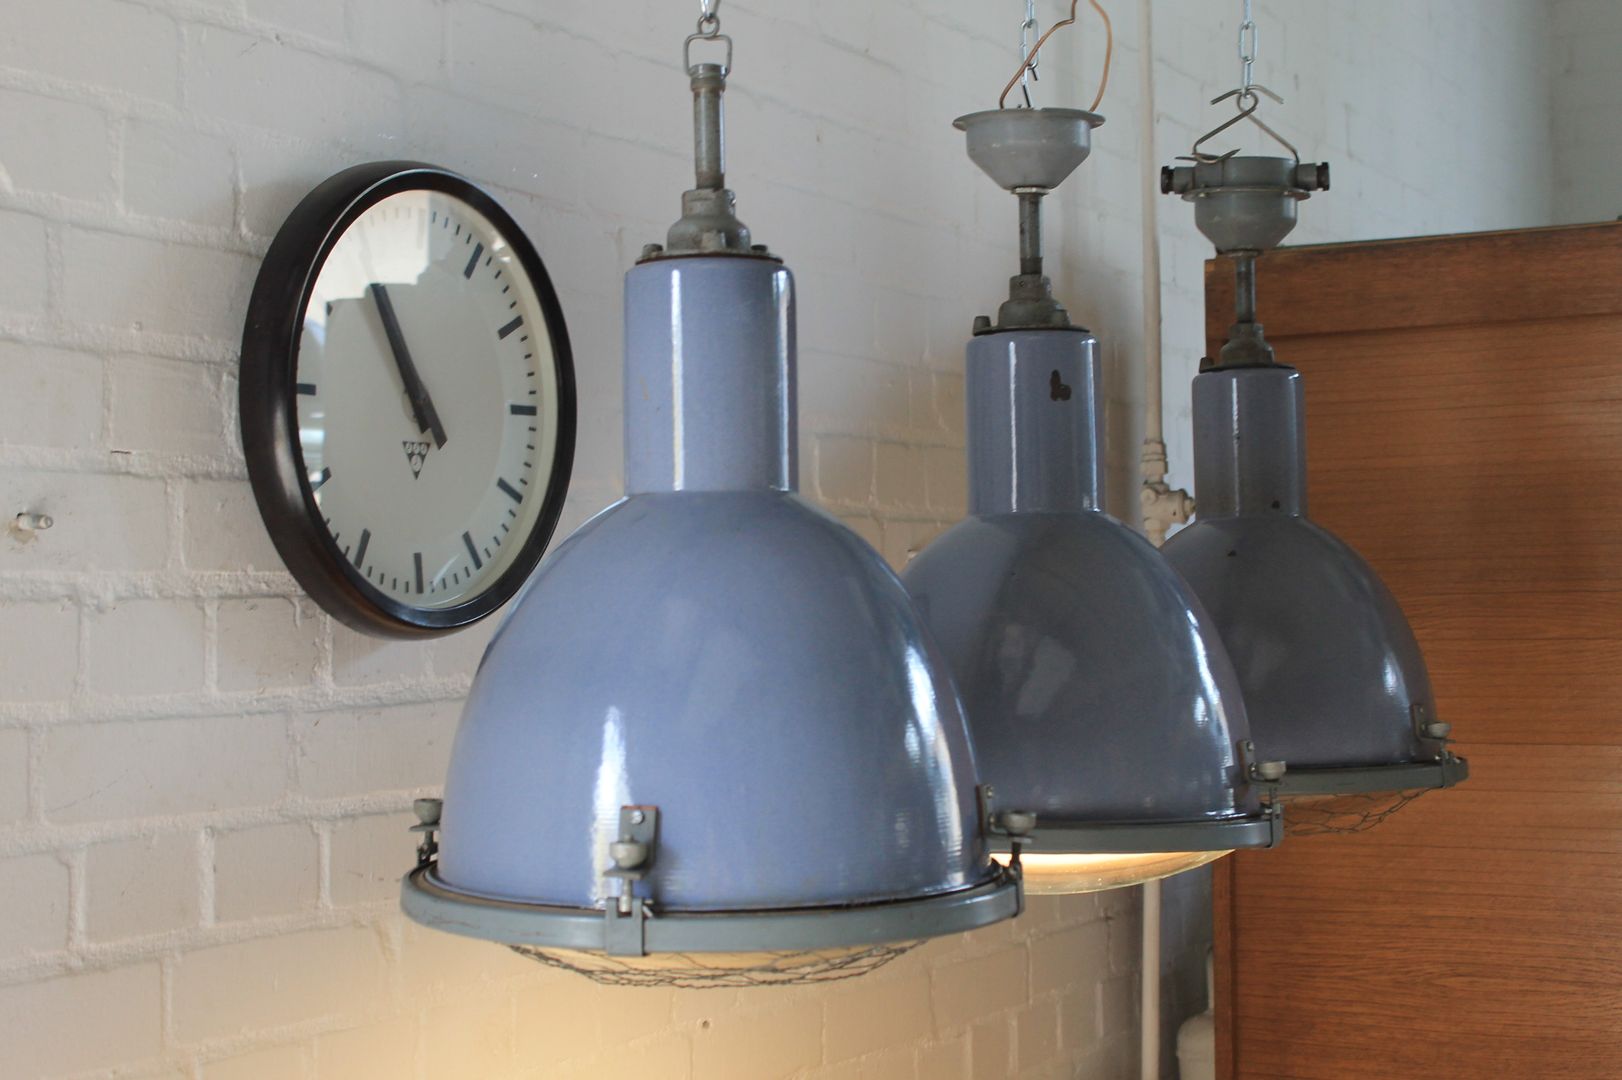 "DOVE" Fabriklampe Design Industrie Lampe Emaille Blau Vintage, Lux-Est Lux-Est مساحات تجارية فلز مكاتب ومحلات